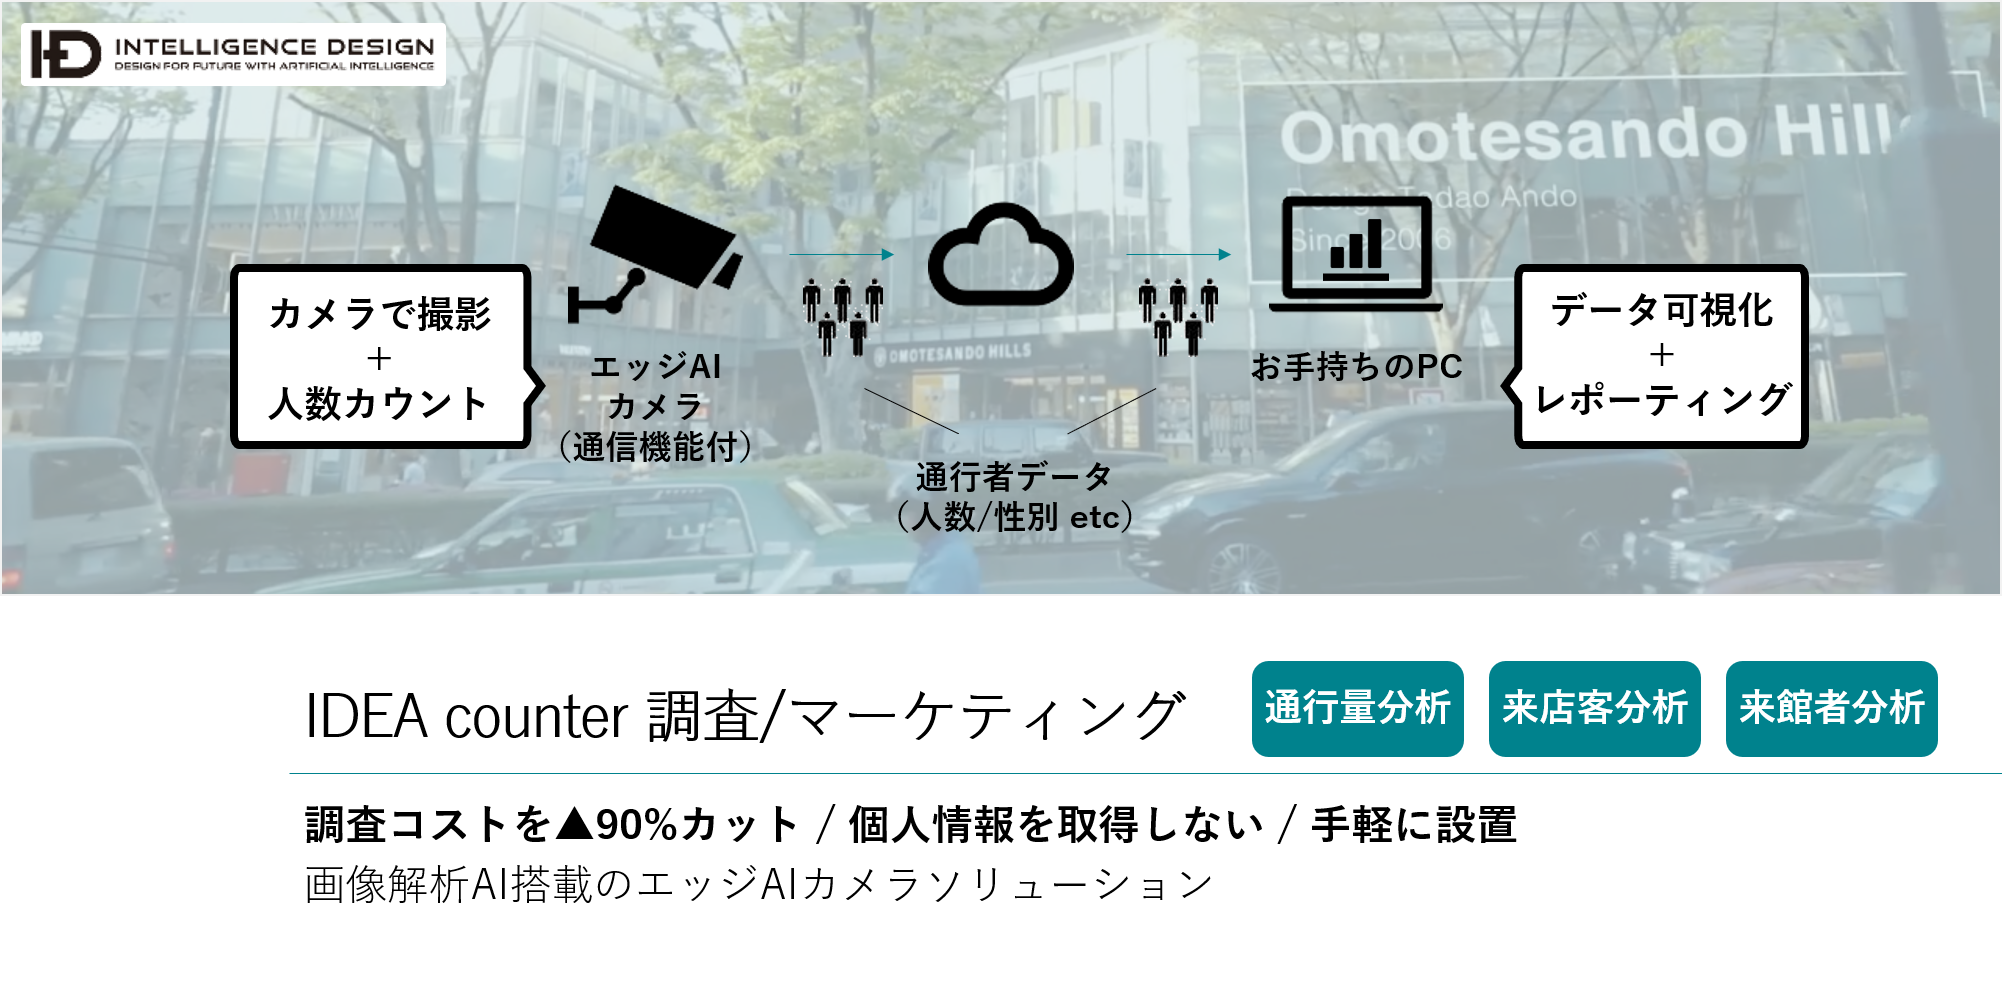 AIカメラによる迷惑行為の監視テストが渋谷で実施。スピーカーで注意するシステムも搭載